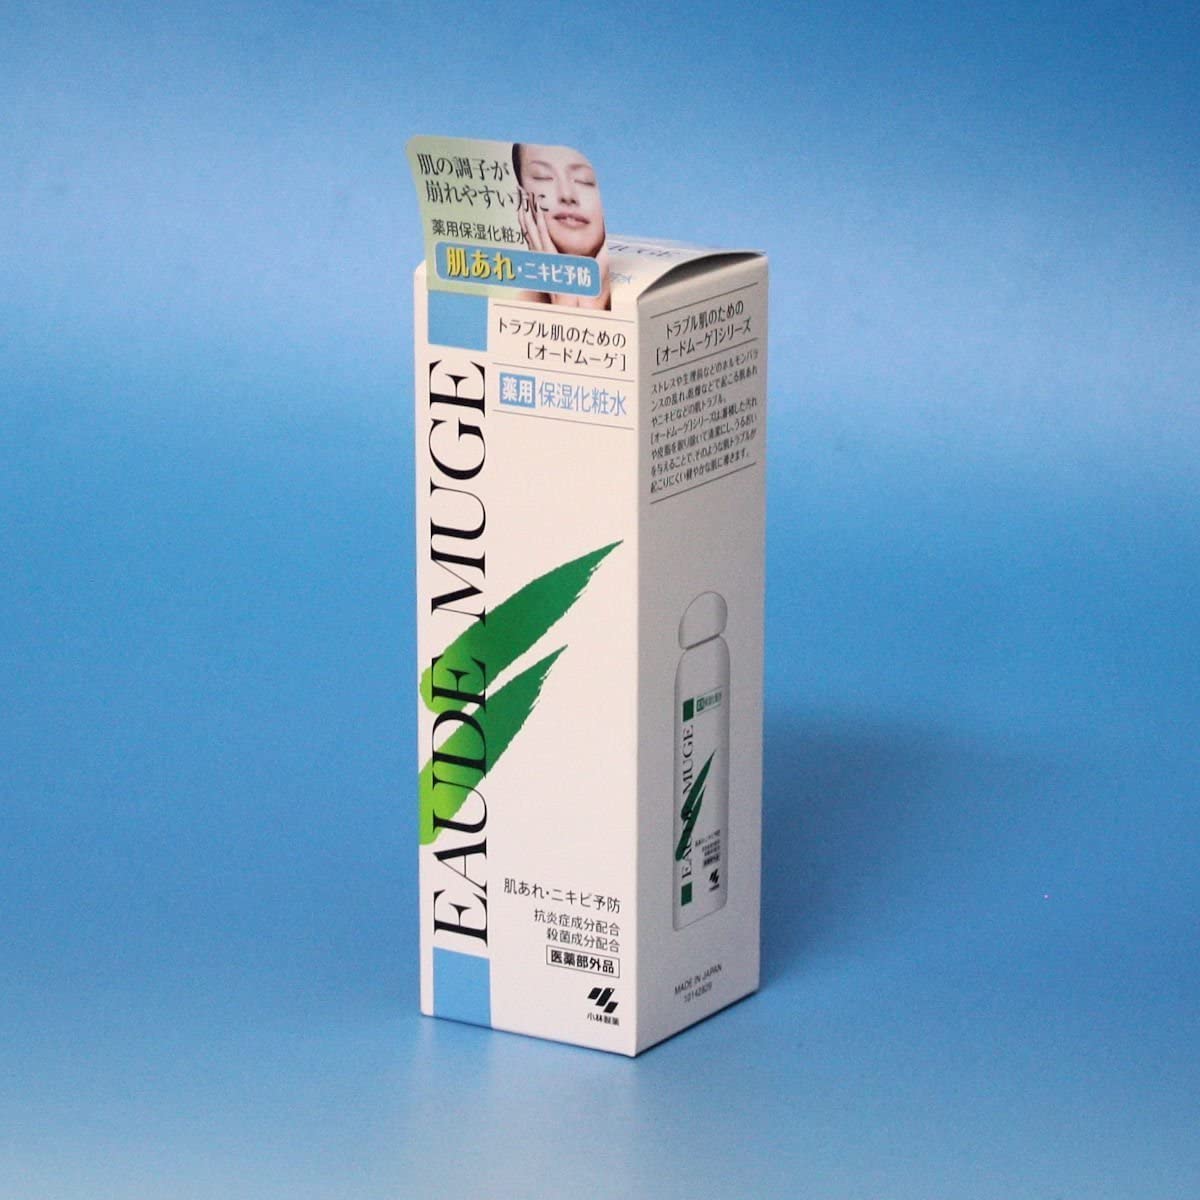 EAUDE MUGE(オードムーゲ) 薬用保湿化粧水の商品画像1 